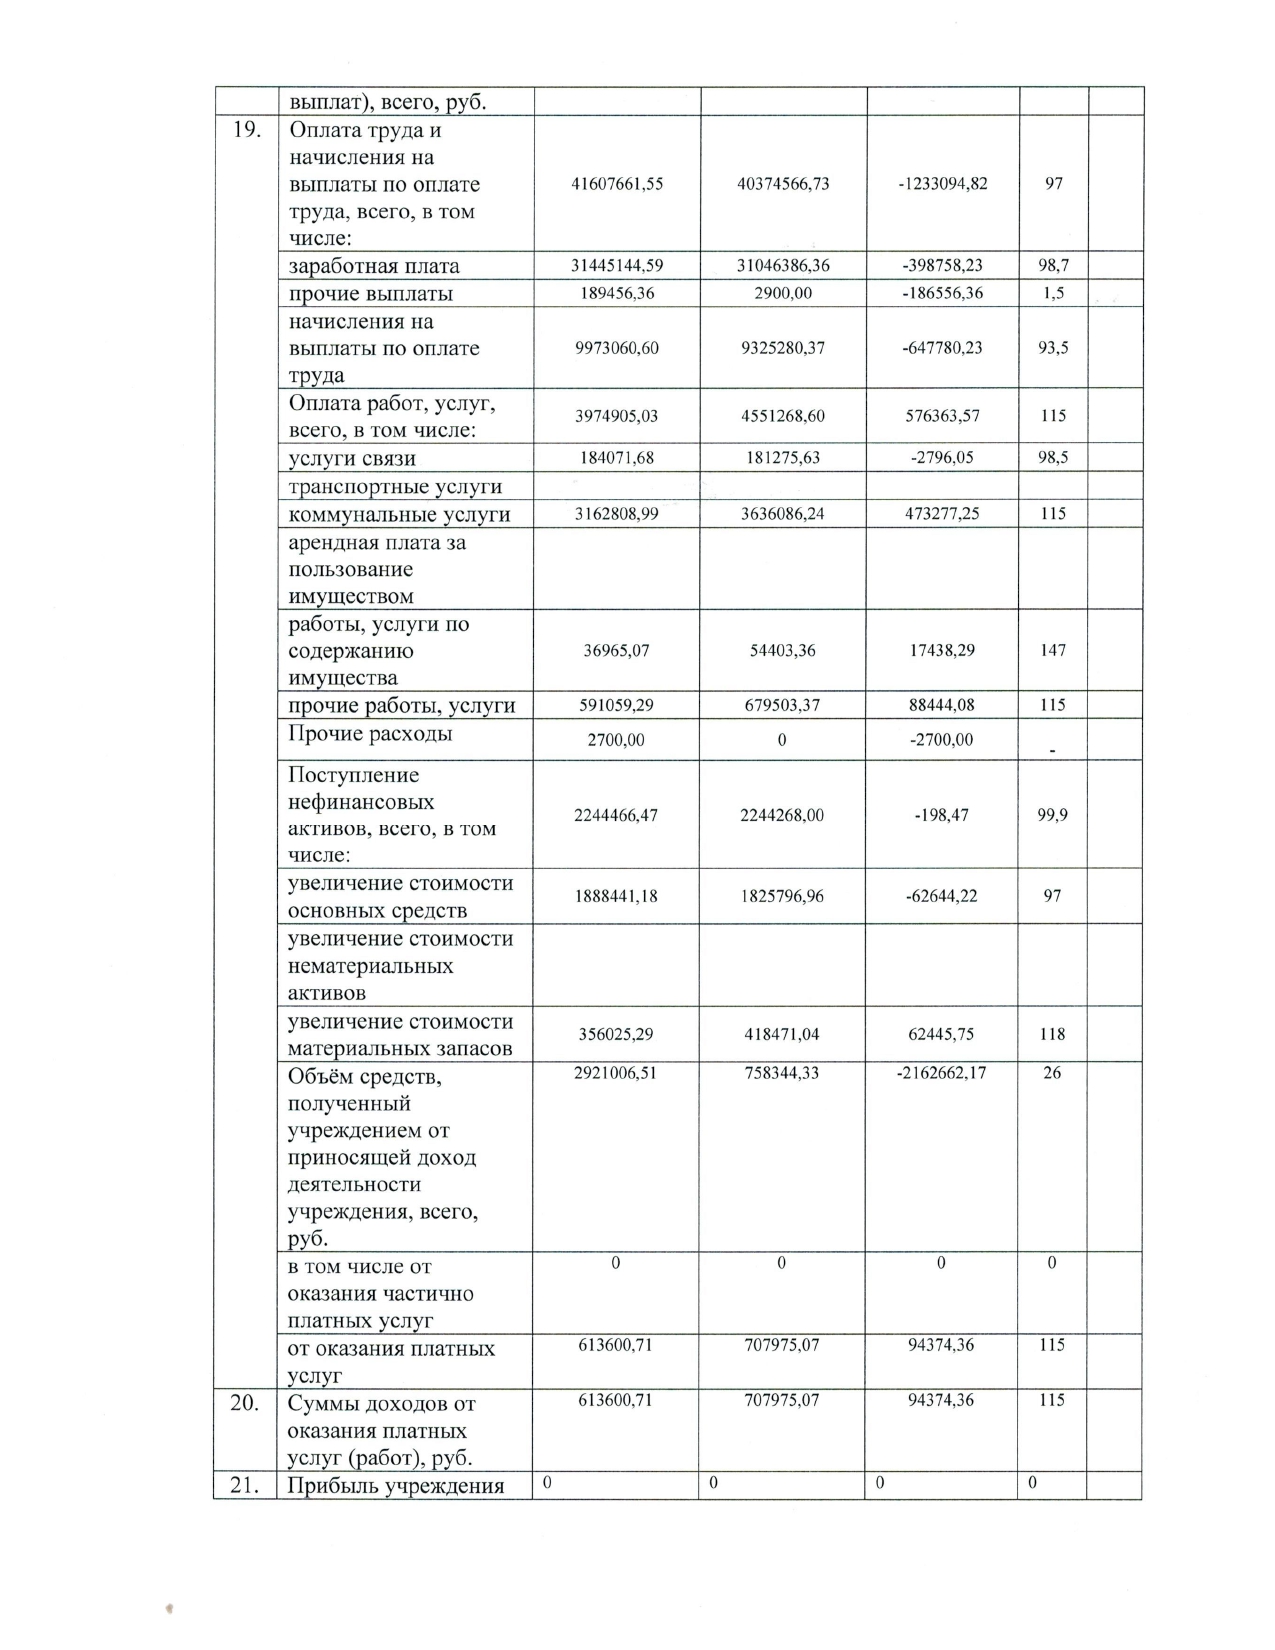 Форма отчета о результатах деятельности МАОУ СОШ 7 имени Г.К. Жукова за 2021 год_page-0006.jpg